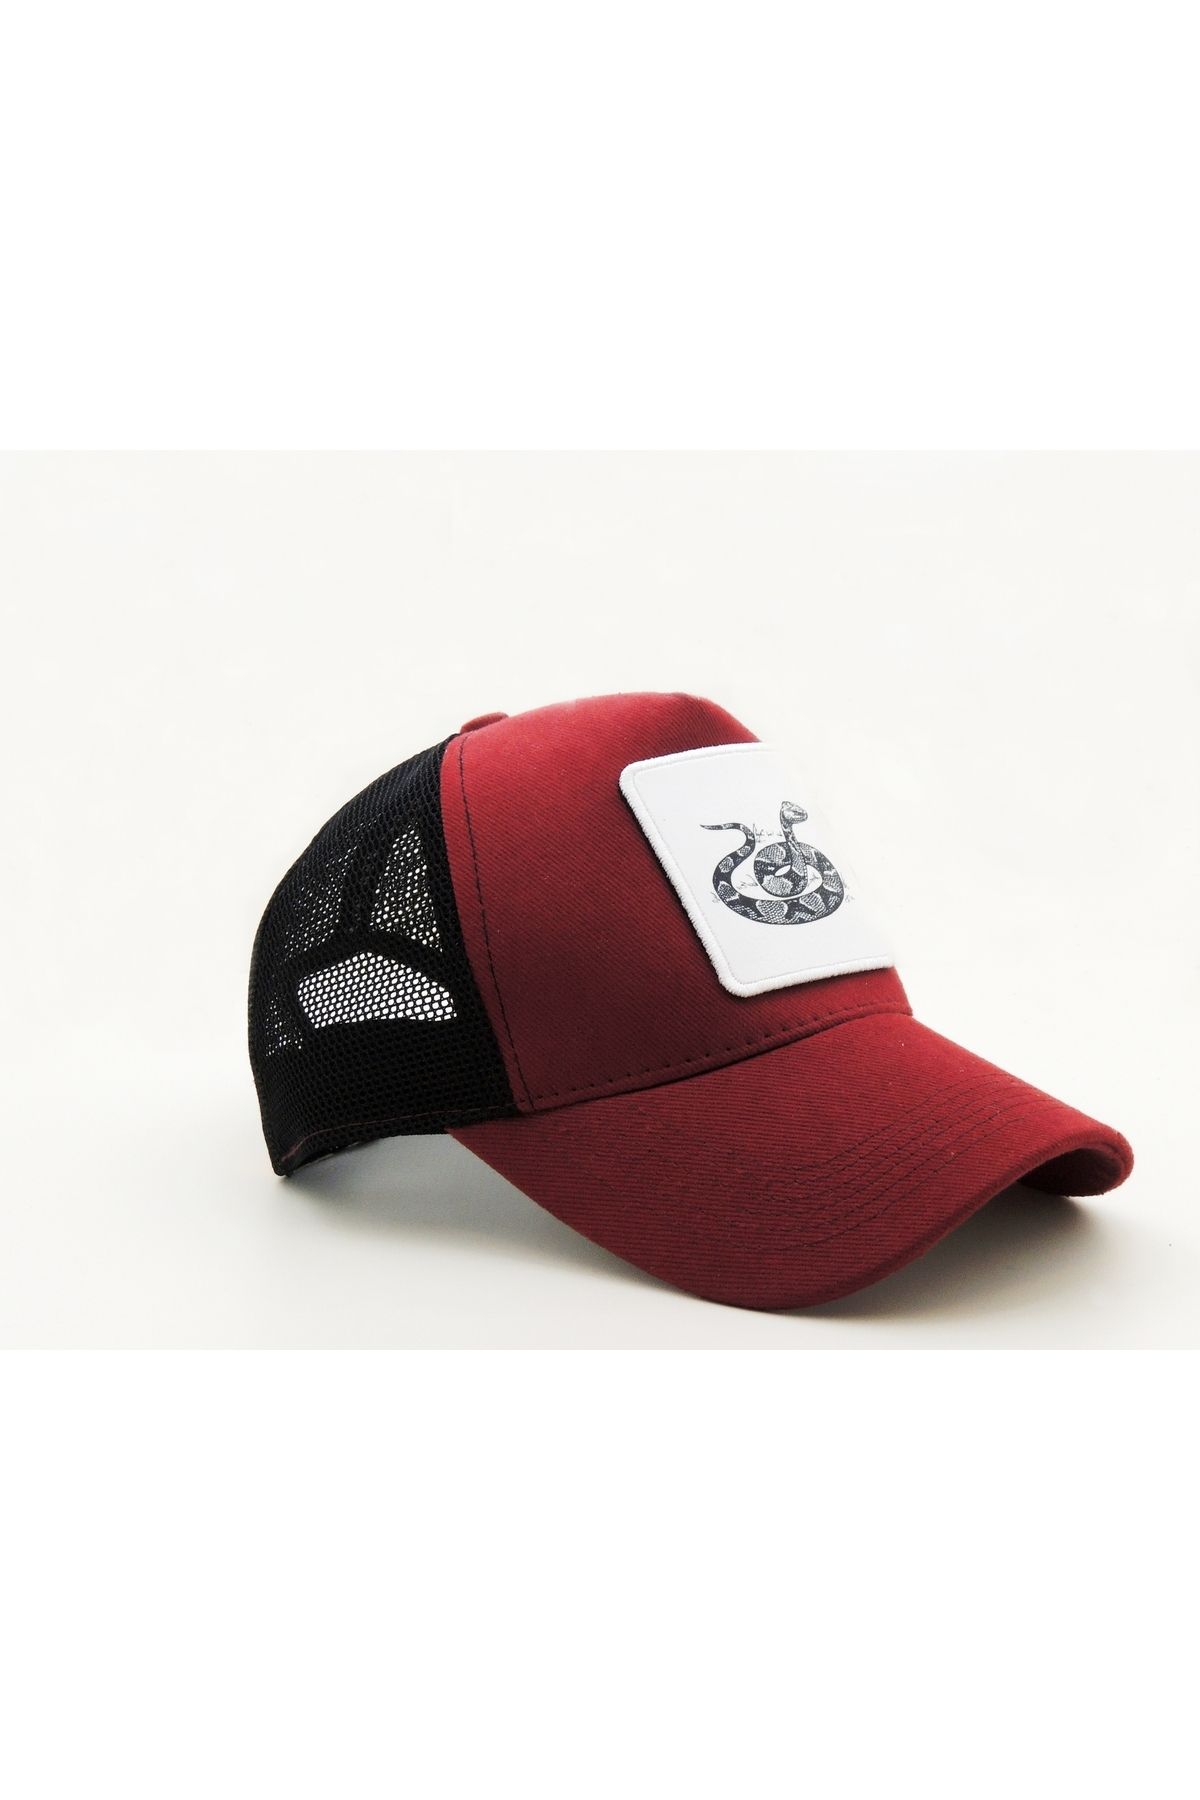 CityGoat Trucker Yılan-477 Kod Logolu Unisex Bordo-Siyah Şapka (CAP)